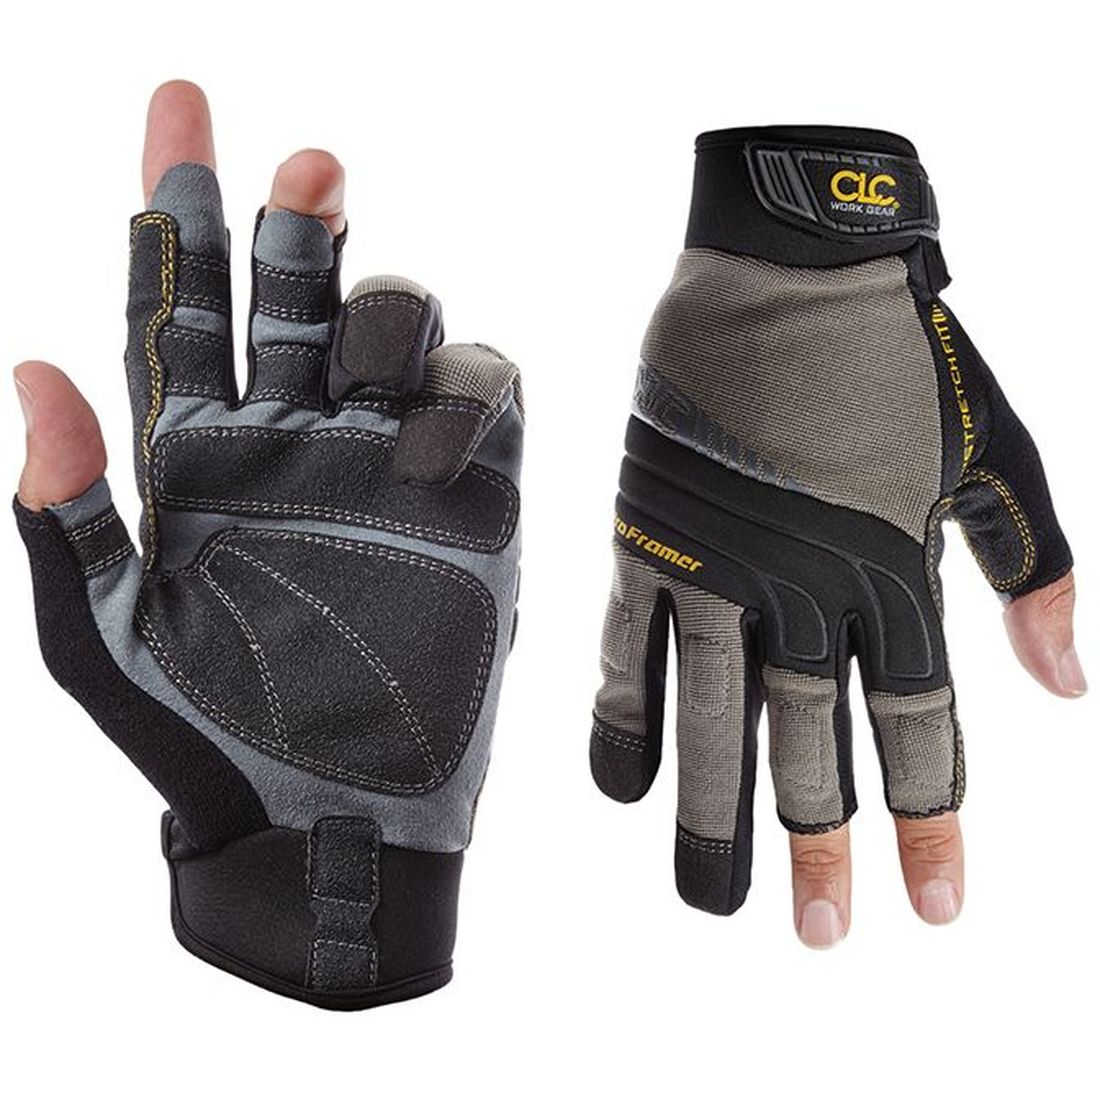 Kuny's Pro Framer Flex Grip  Gloves - Medium                                          